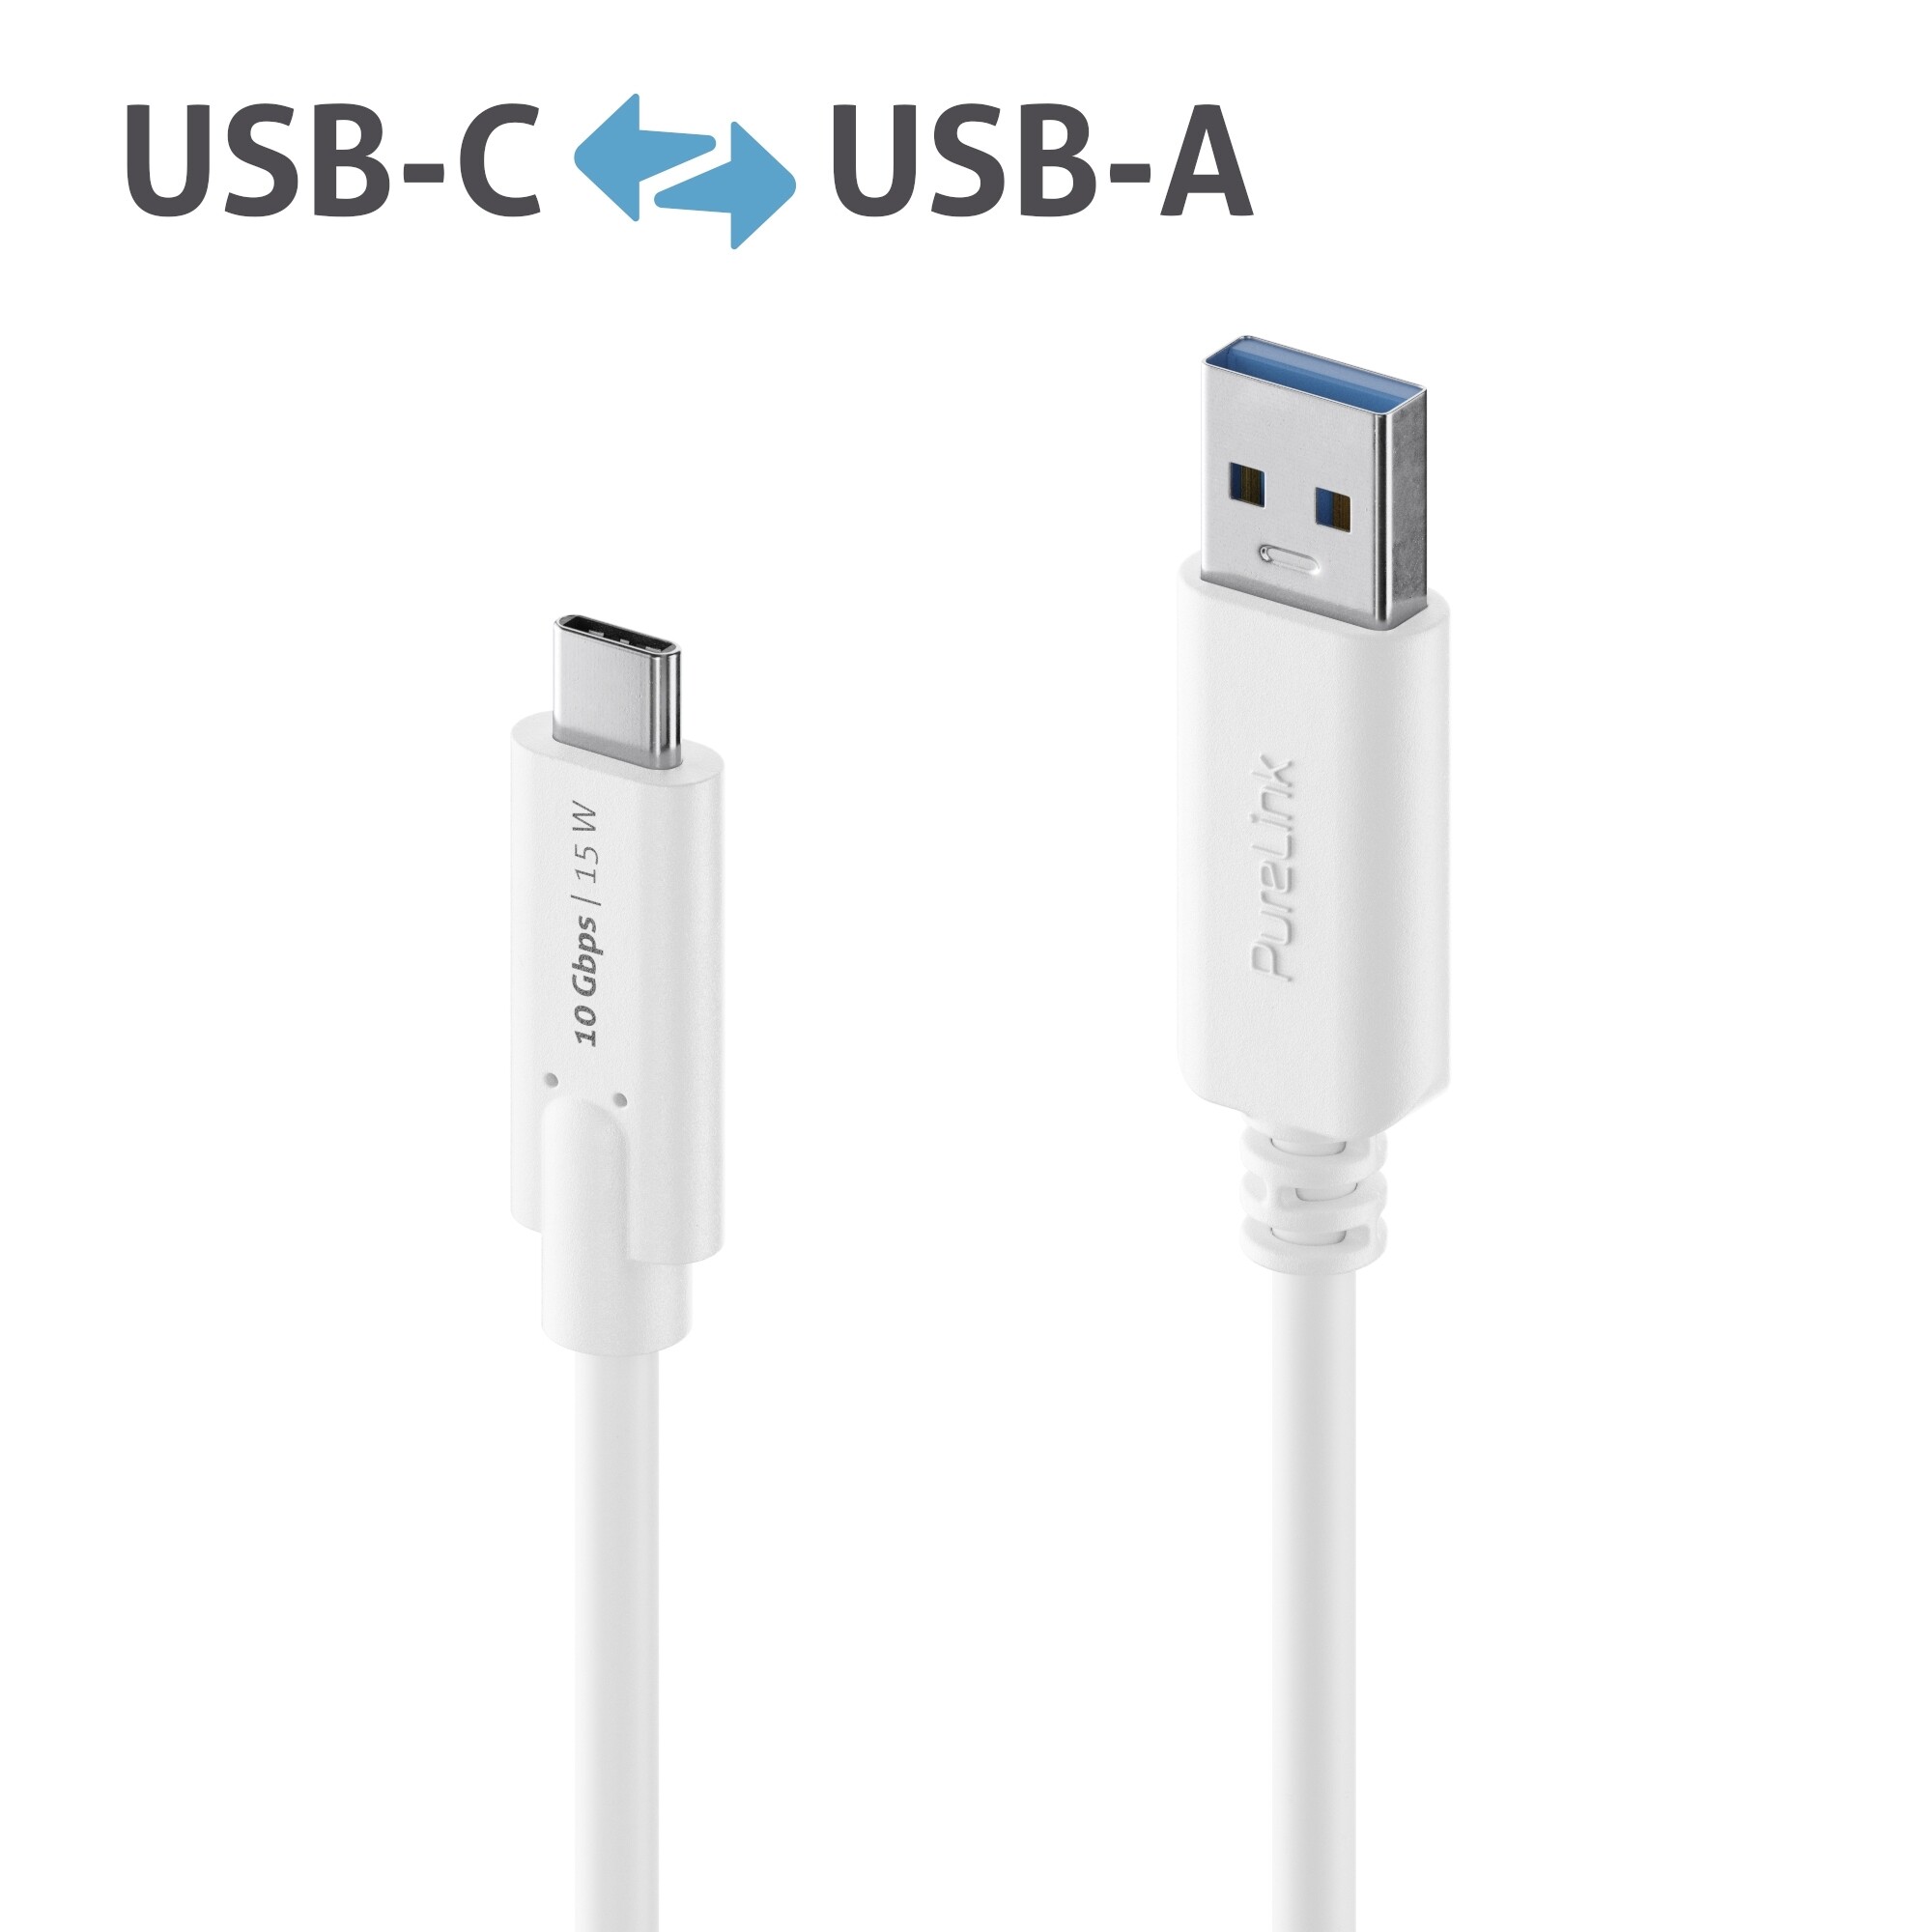 Purelink-IS2610-010-USB-C-auf-USB-A-Gen-2-Kabel-1m-weiss